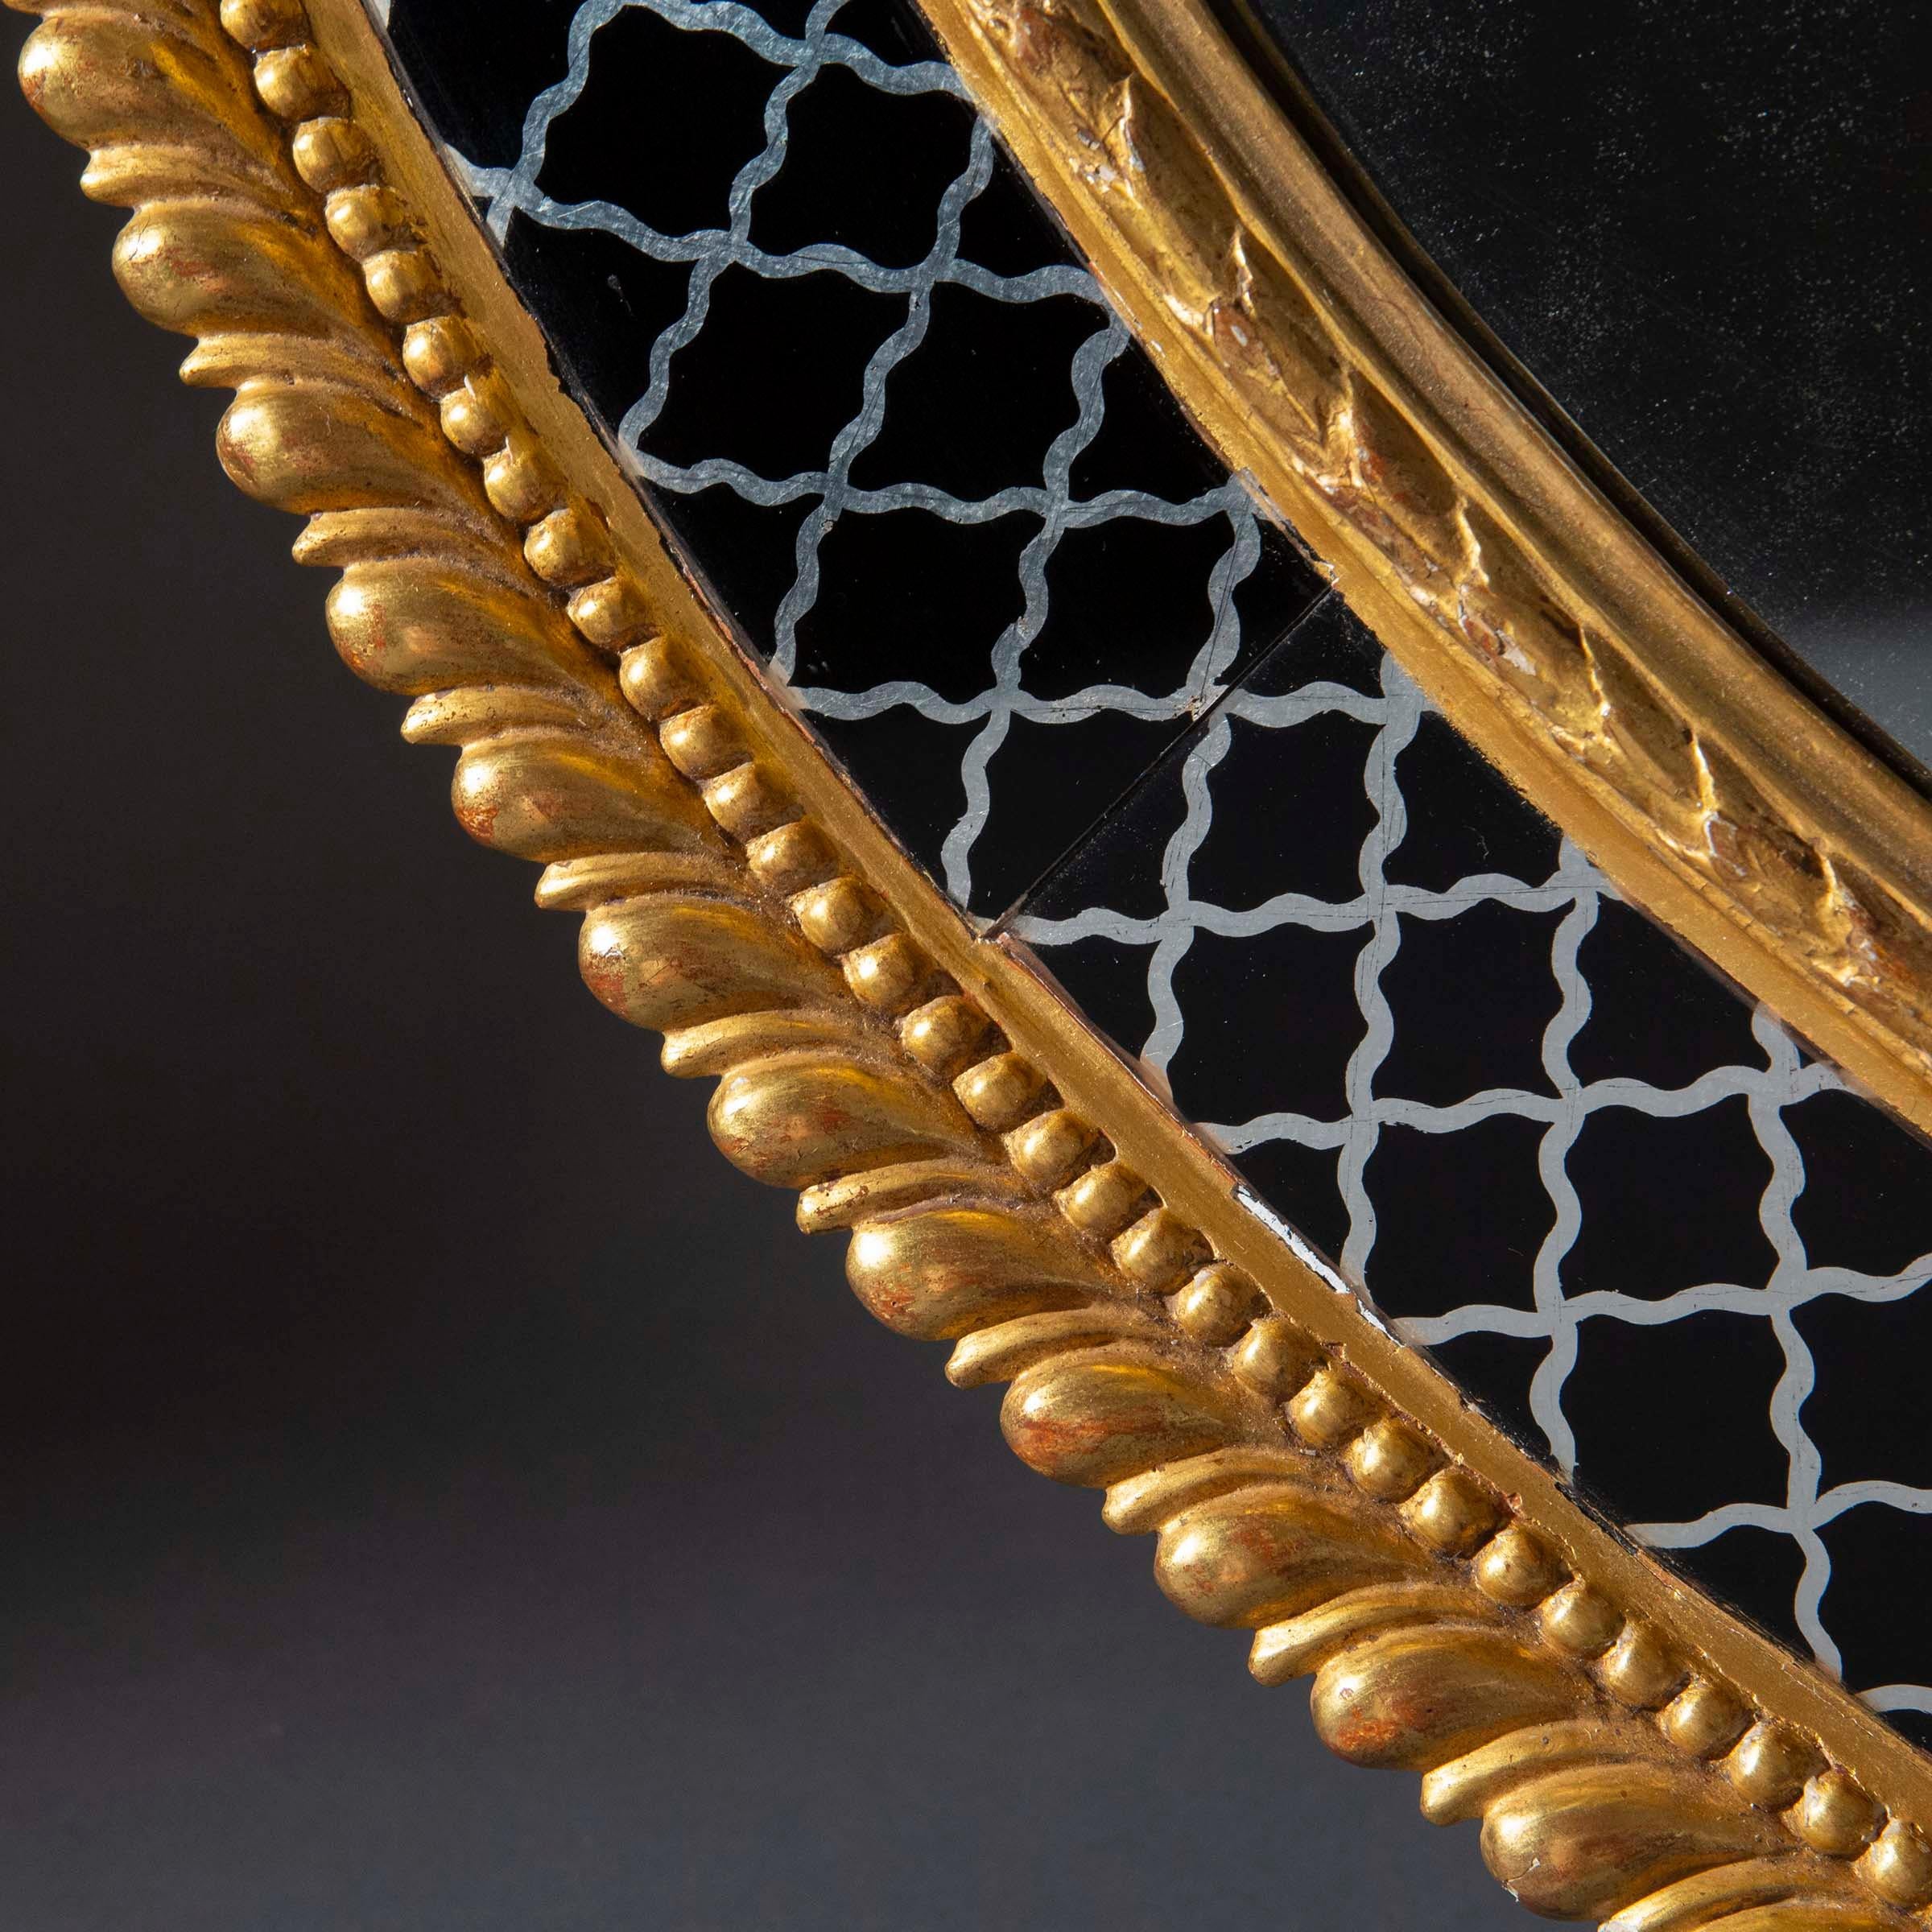 Grand miroir mural ovale de la période George III - début de la Régence, dans un élégant cadre en bois doré avec une bordure en verre peint à l'envers (Eleg),
Anglais, vers 1800

Pourquoi nous l'aimons
Un miroir merveilleusement décoratif de grandes